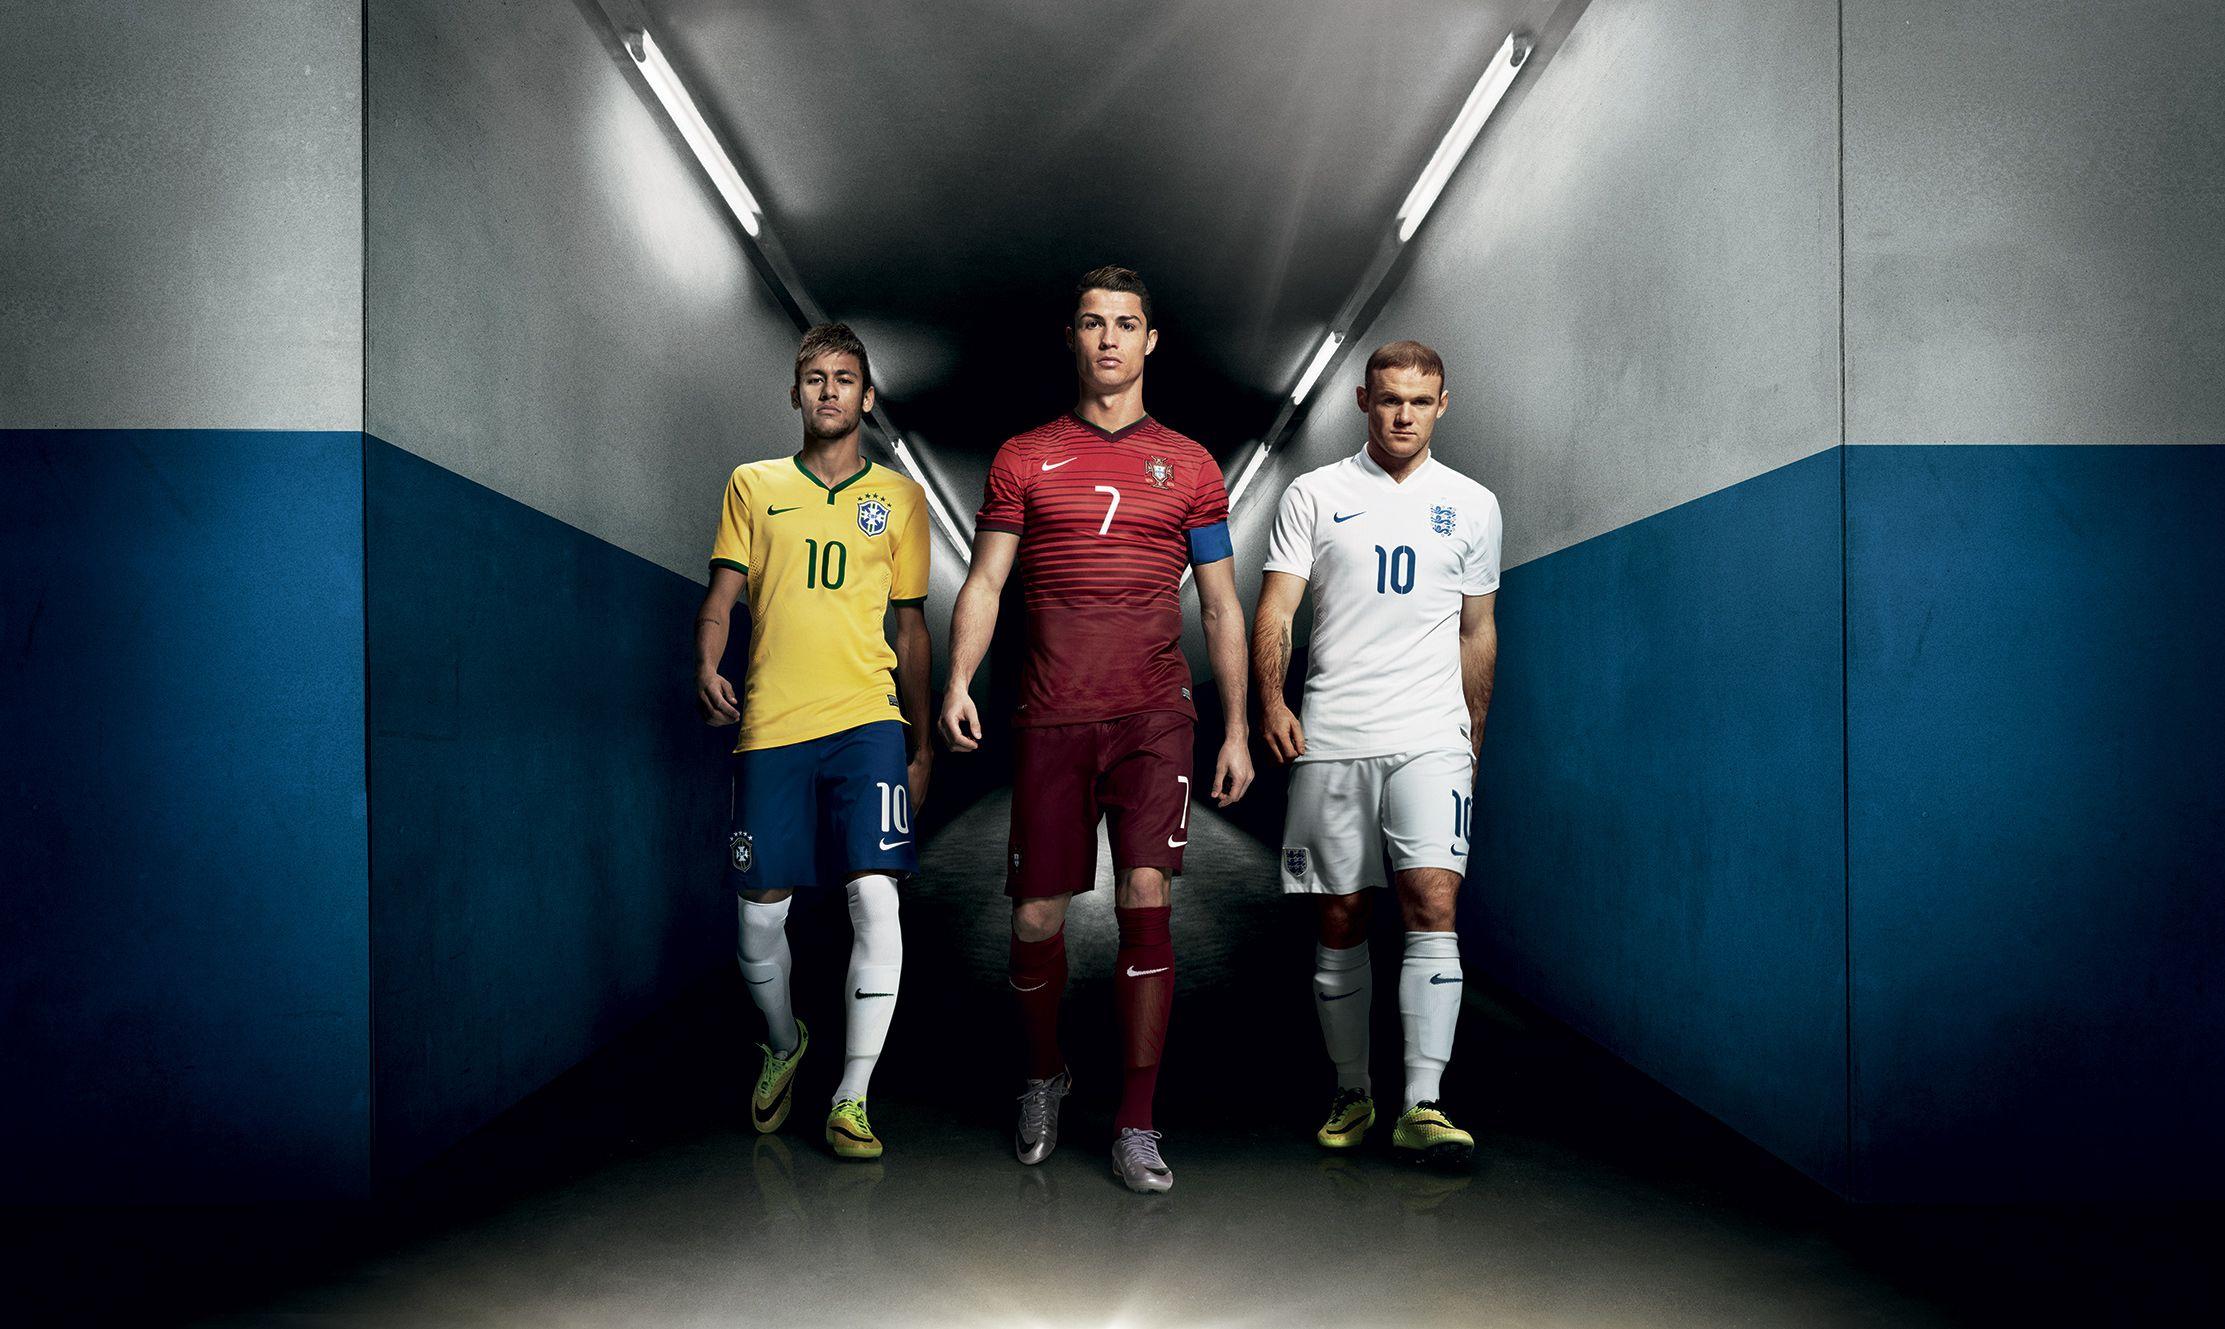 Làm thế nào để kết hợp ba cầu thủ bóng đá tuyệt vời nhất hiện tại lại với nhau? Hãy xem hình của Neymar, Messi và Ronaldo để thấy sự kết hợp đầy màu sắc và đẳng cấp.